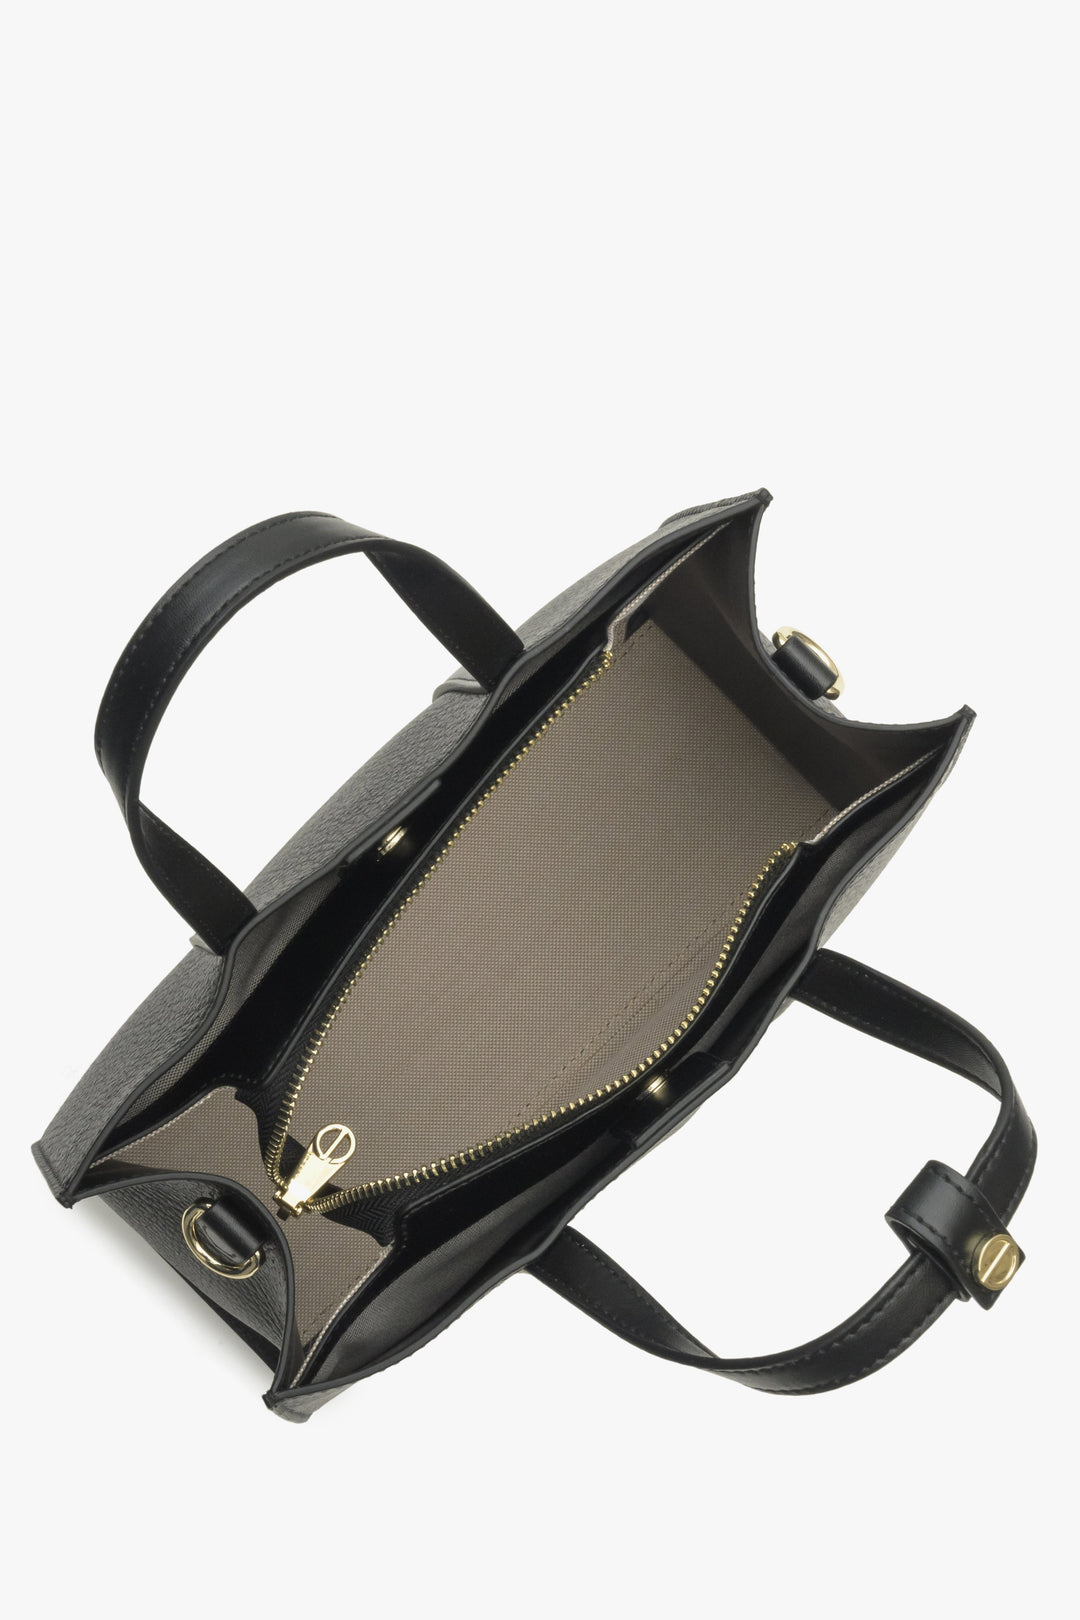 Skórzana czarna torba damska shopper Estro - prezentacja wnętrza modelu.